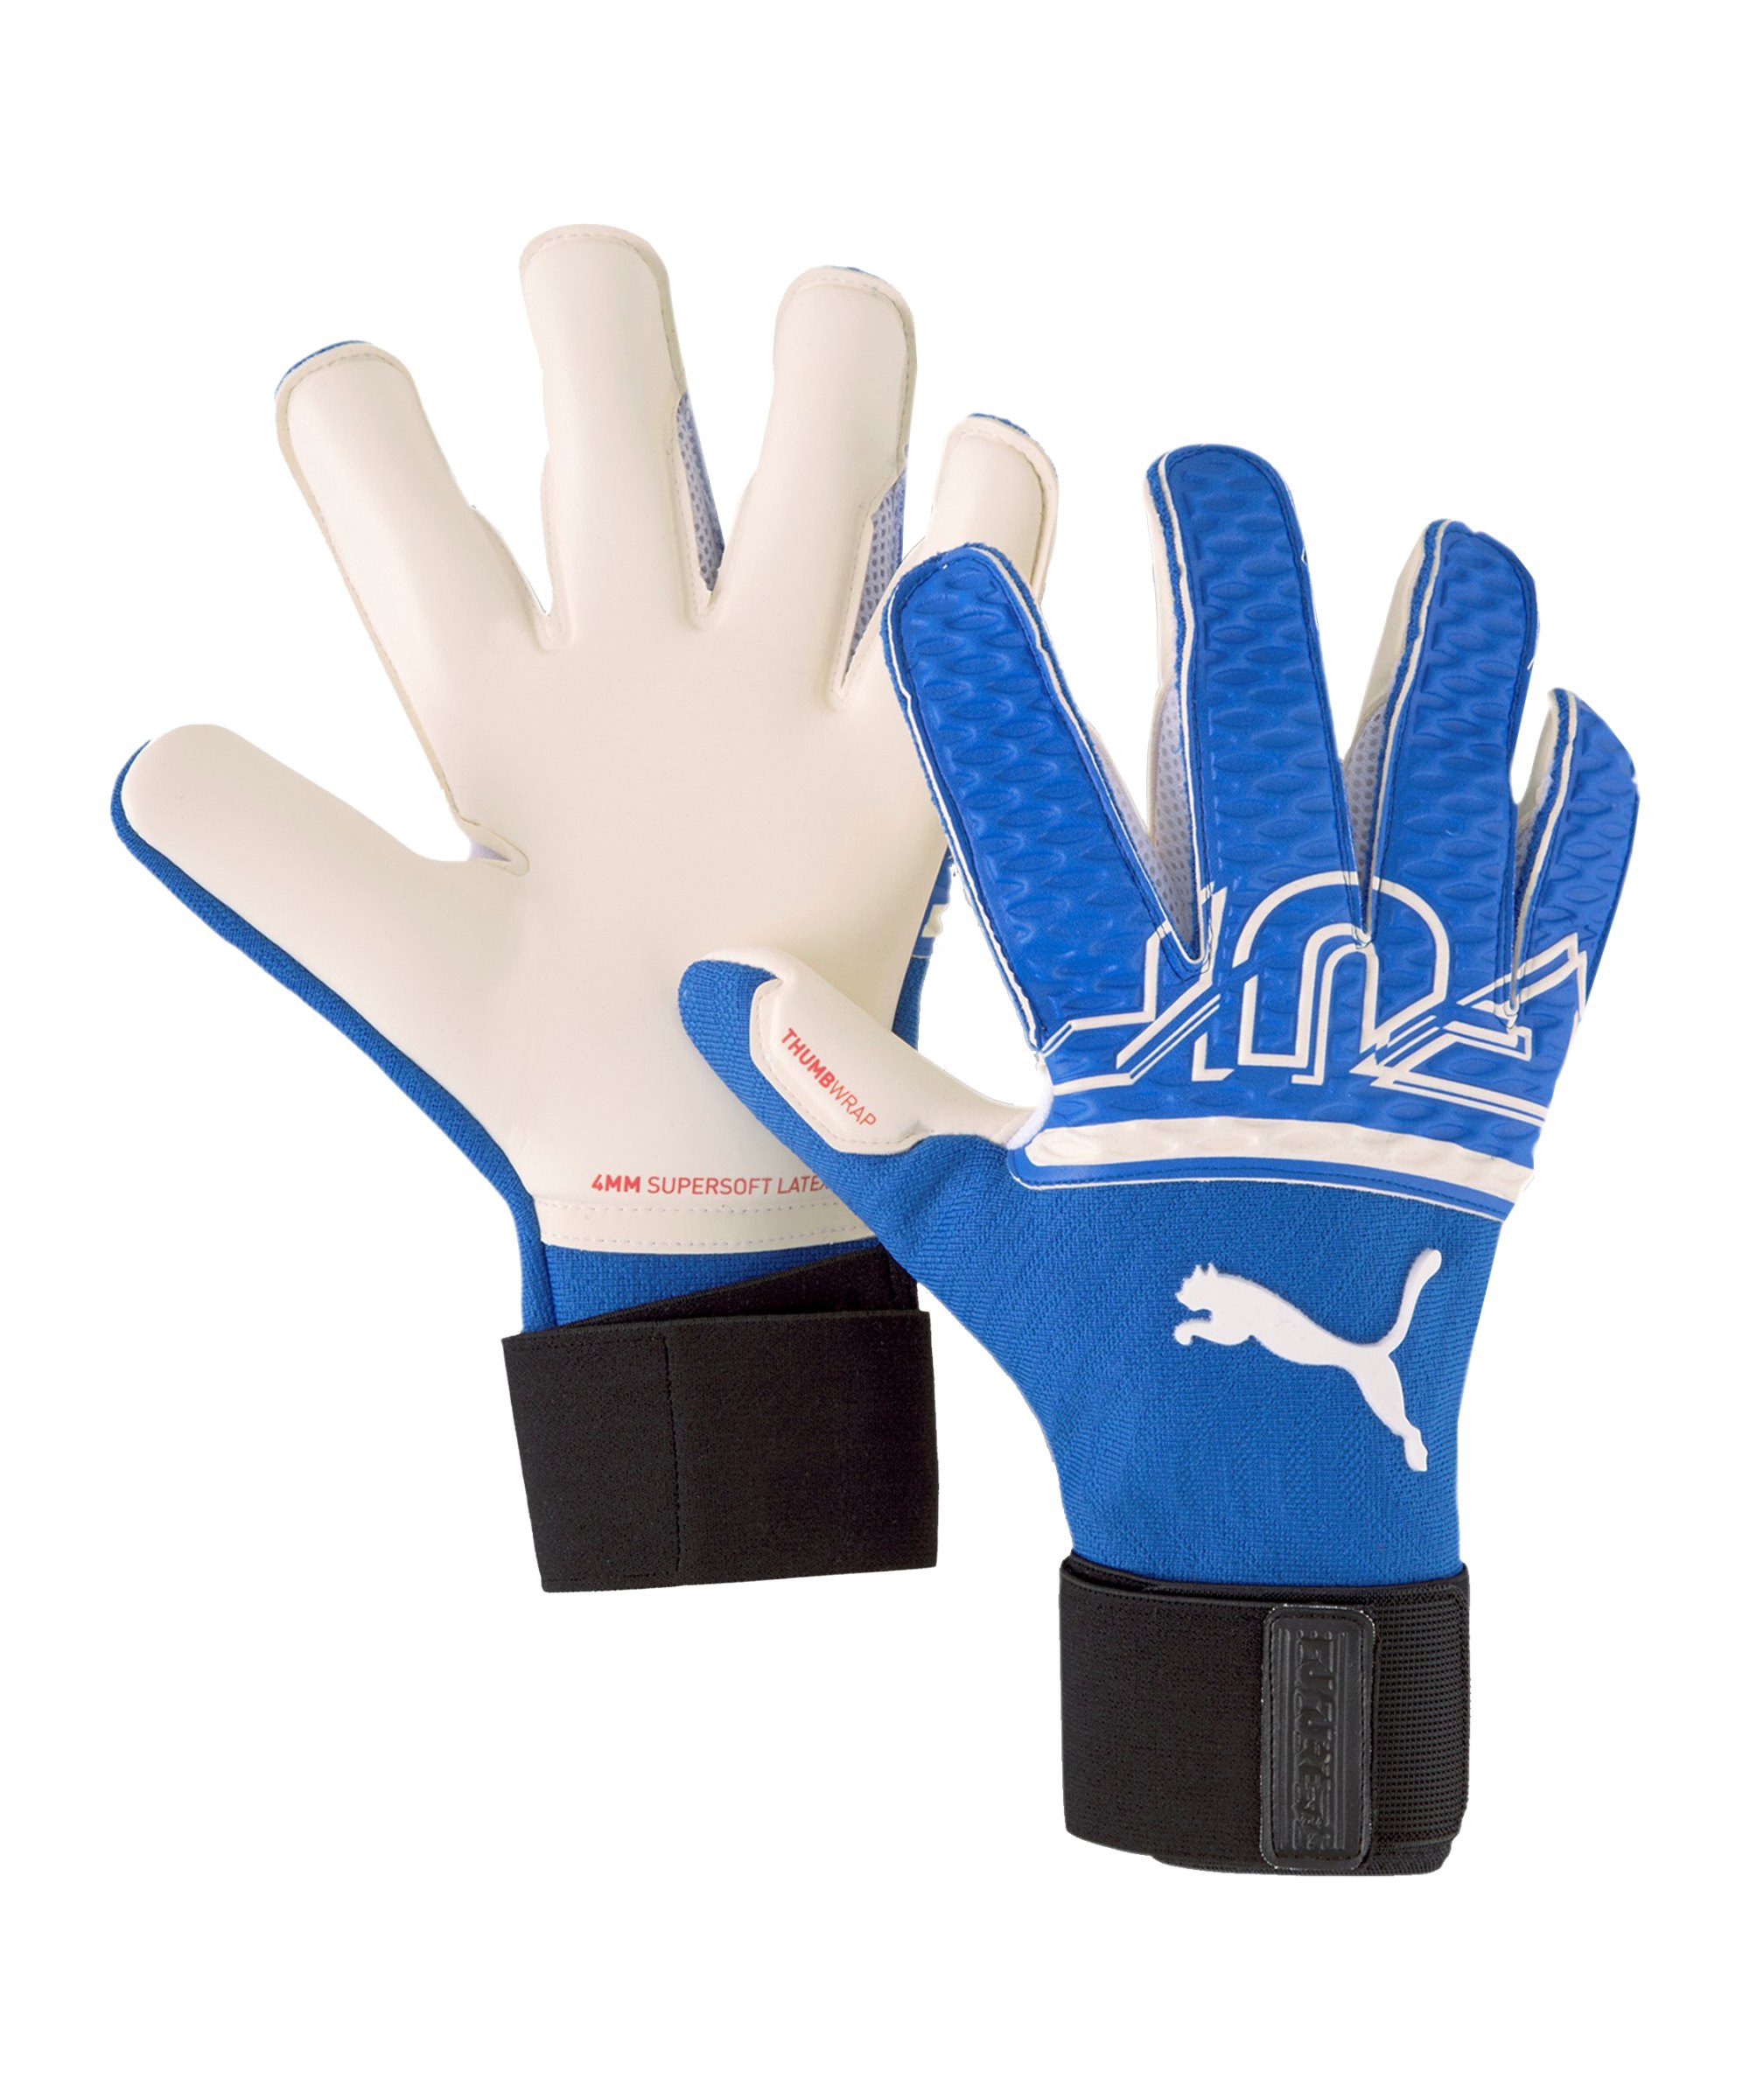 PUMA FUTURE Grip 2 SGC Faster Football TW-Handschuh Blau F04 - blau